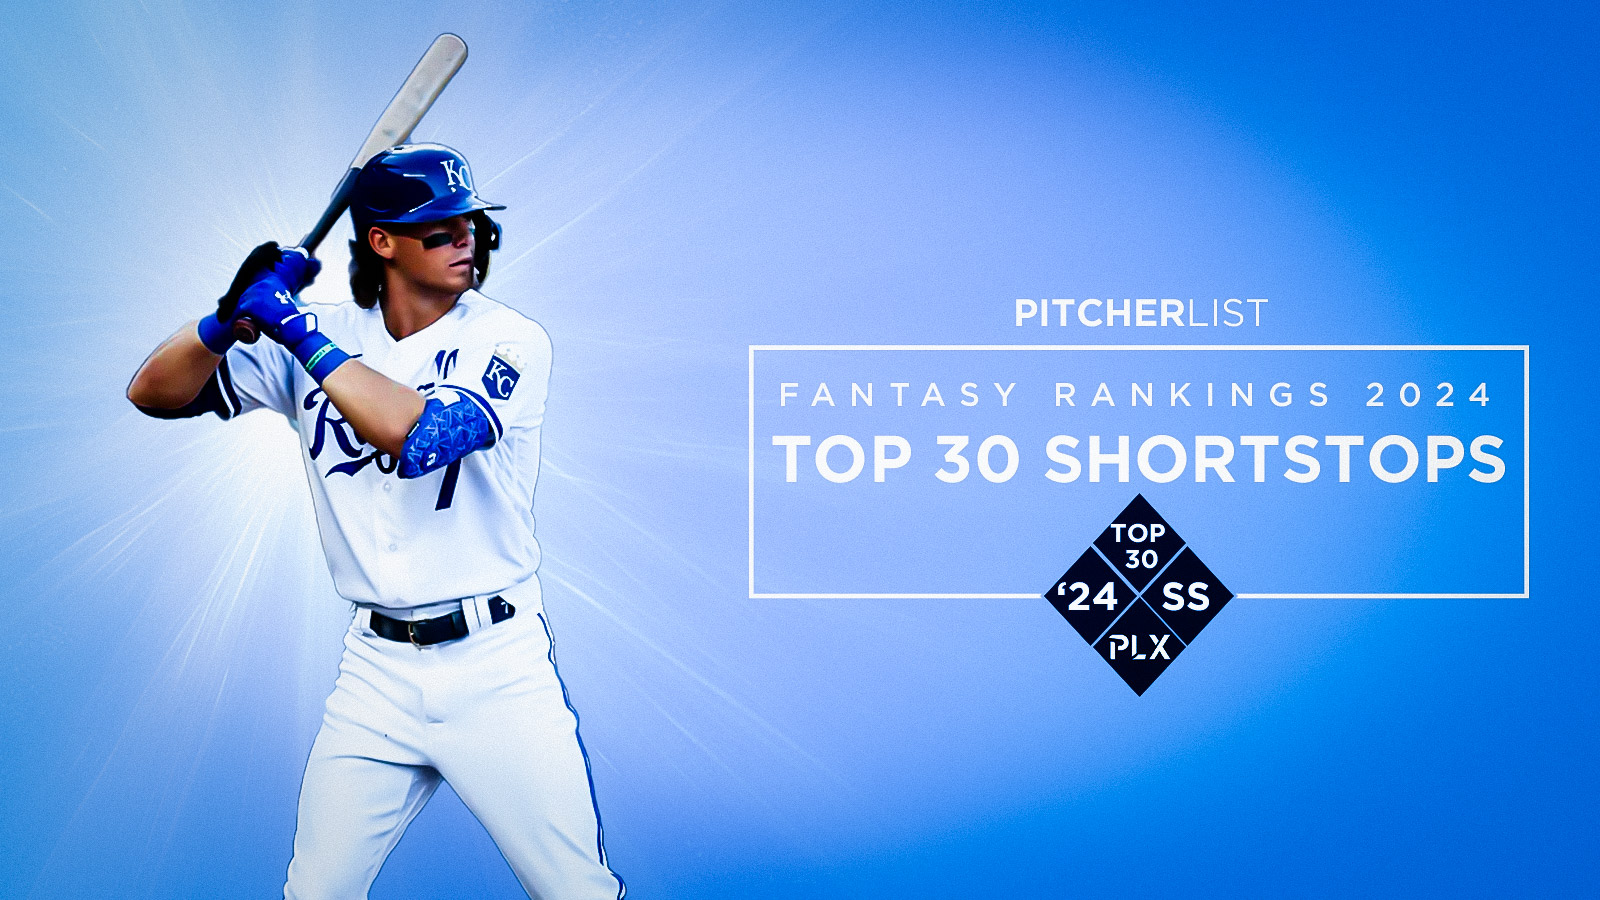 Top 30 Shortstops for Fantasy Baseball 2024 Pitcher List